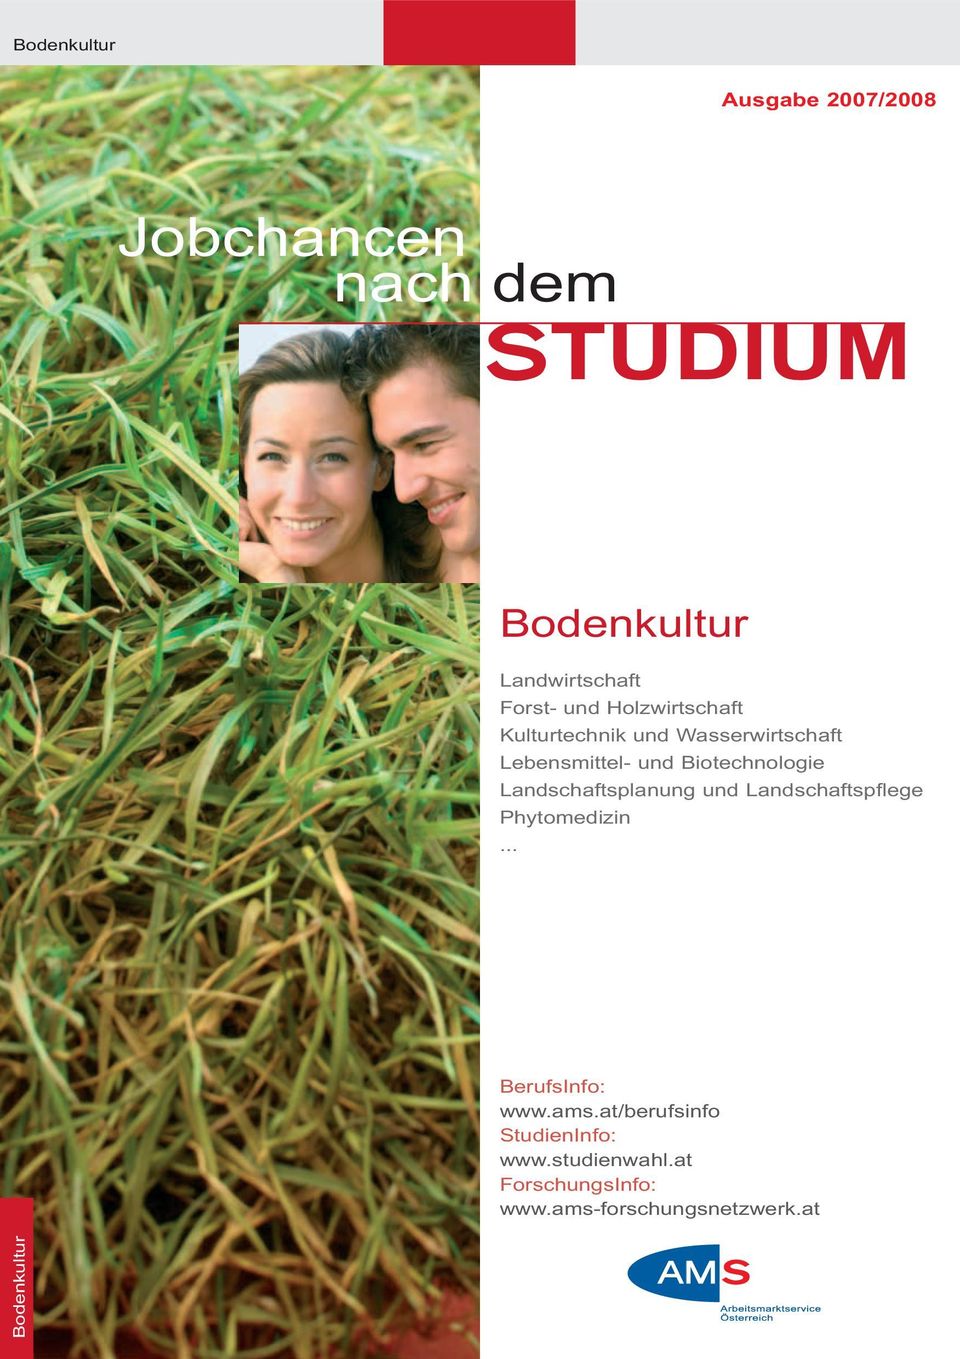 Biotechnologie Landschaftsplanung und Landschaftspflege Phytomedizin... BerufsInfo: www.